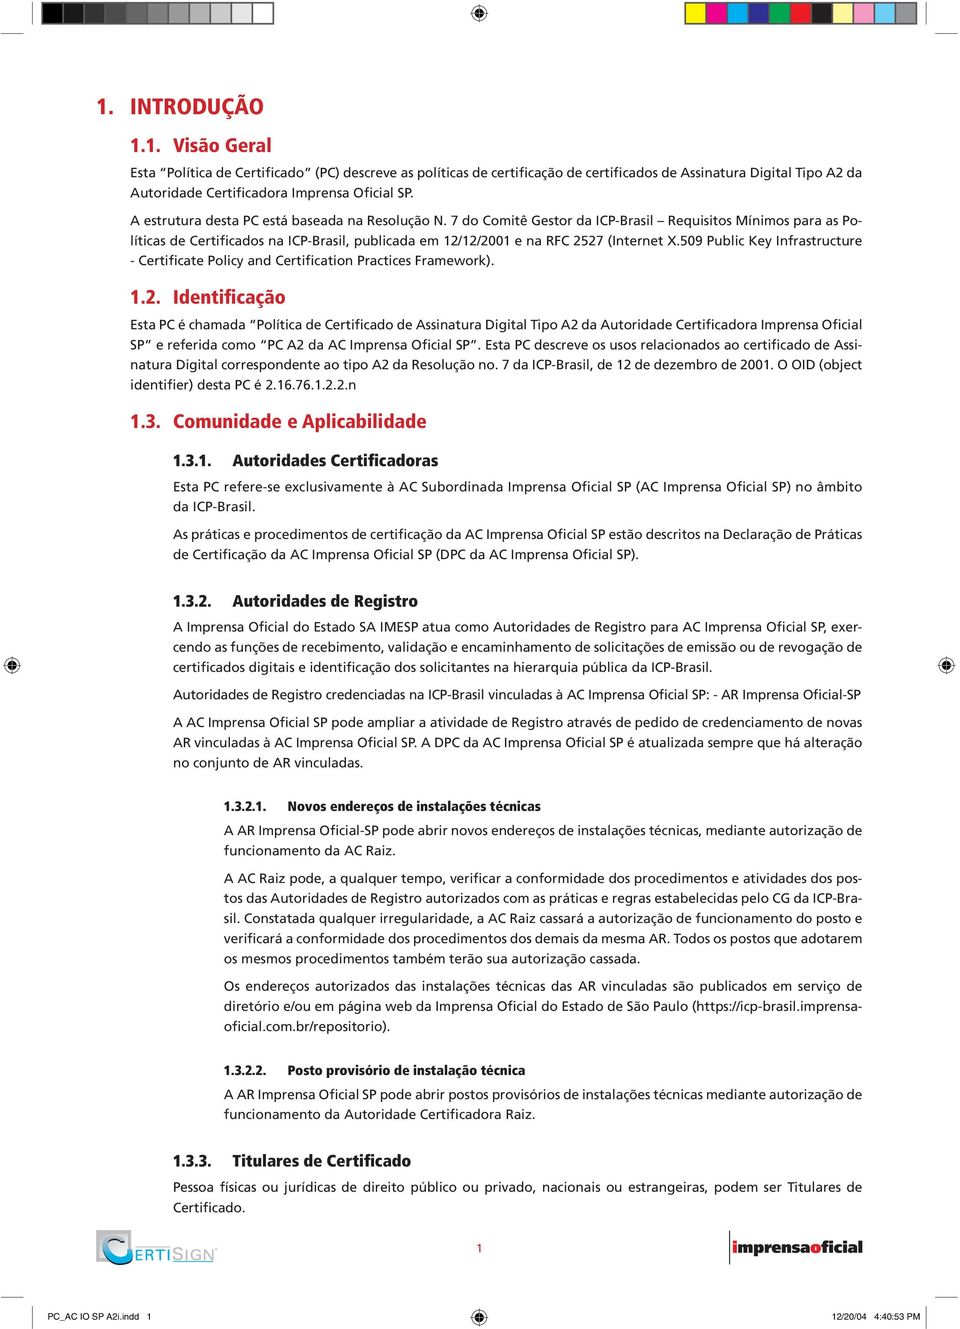 7 do Comitê Gestor da ICP-Brasil Requisitos Mínimos para as Políticas de Certificados na ICP-Brasil, publicada em 12/12/2001 e na RFC 2527 (Internet X.